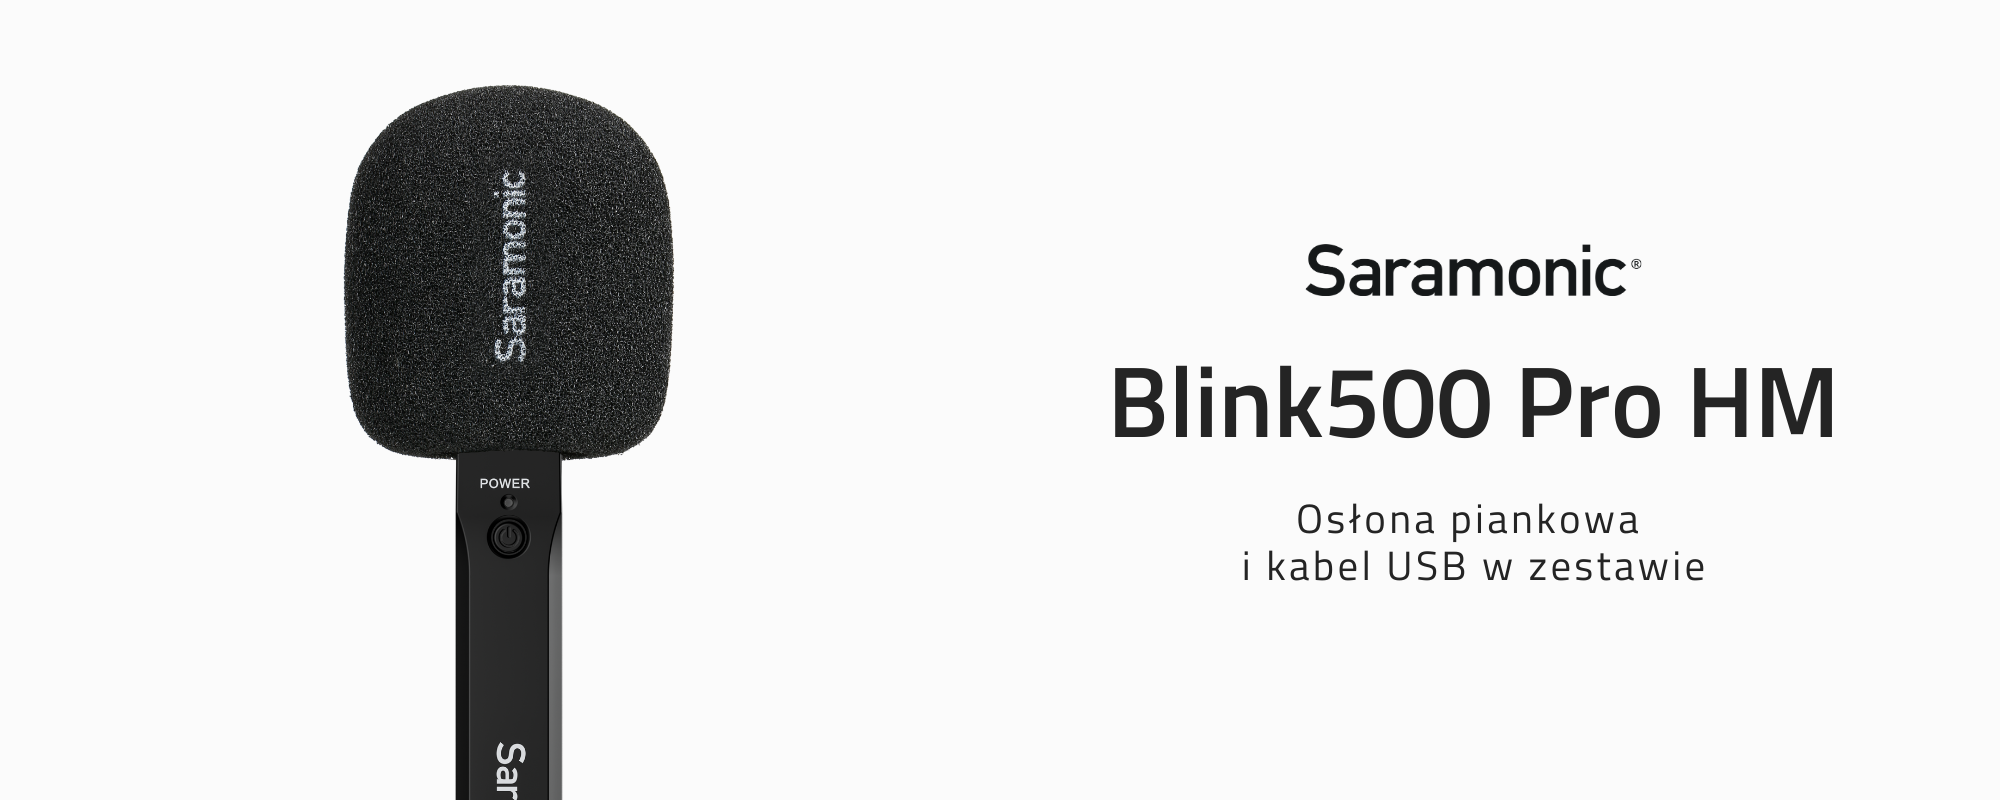 Uchwyt Blink500 Pro HM z osłoną piankową